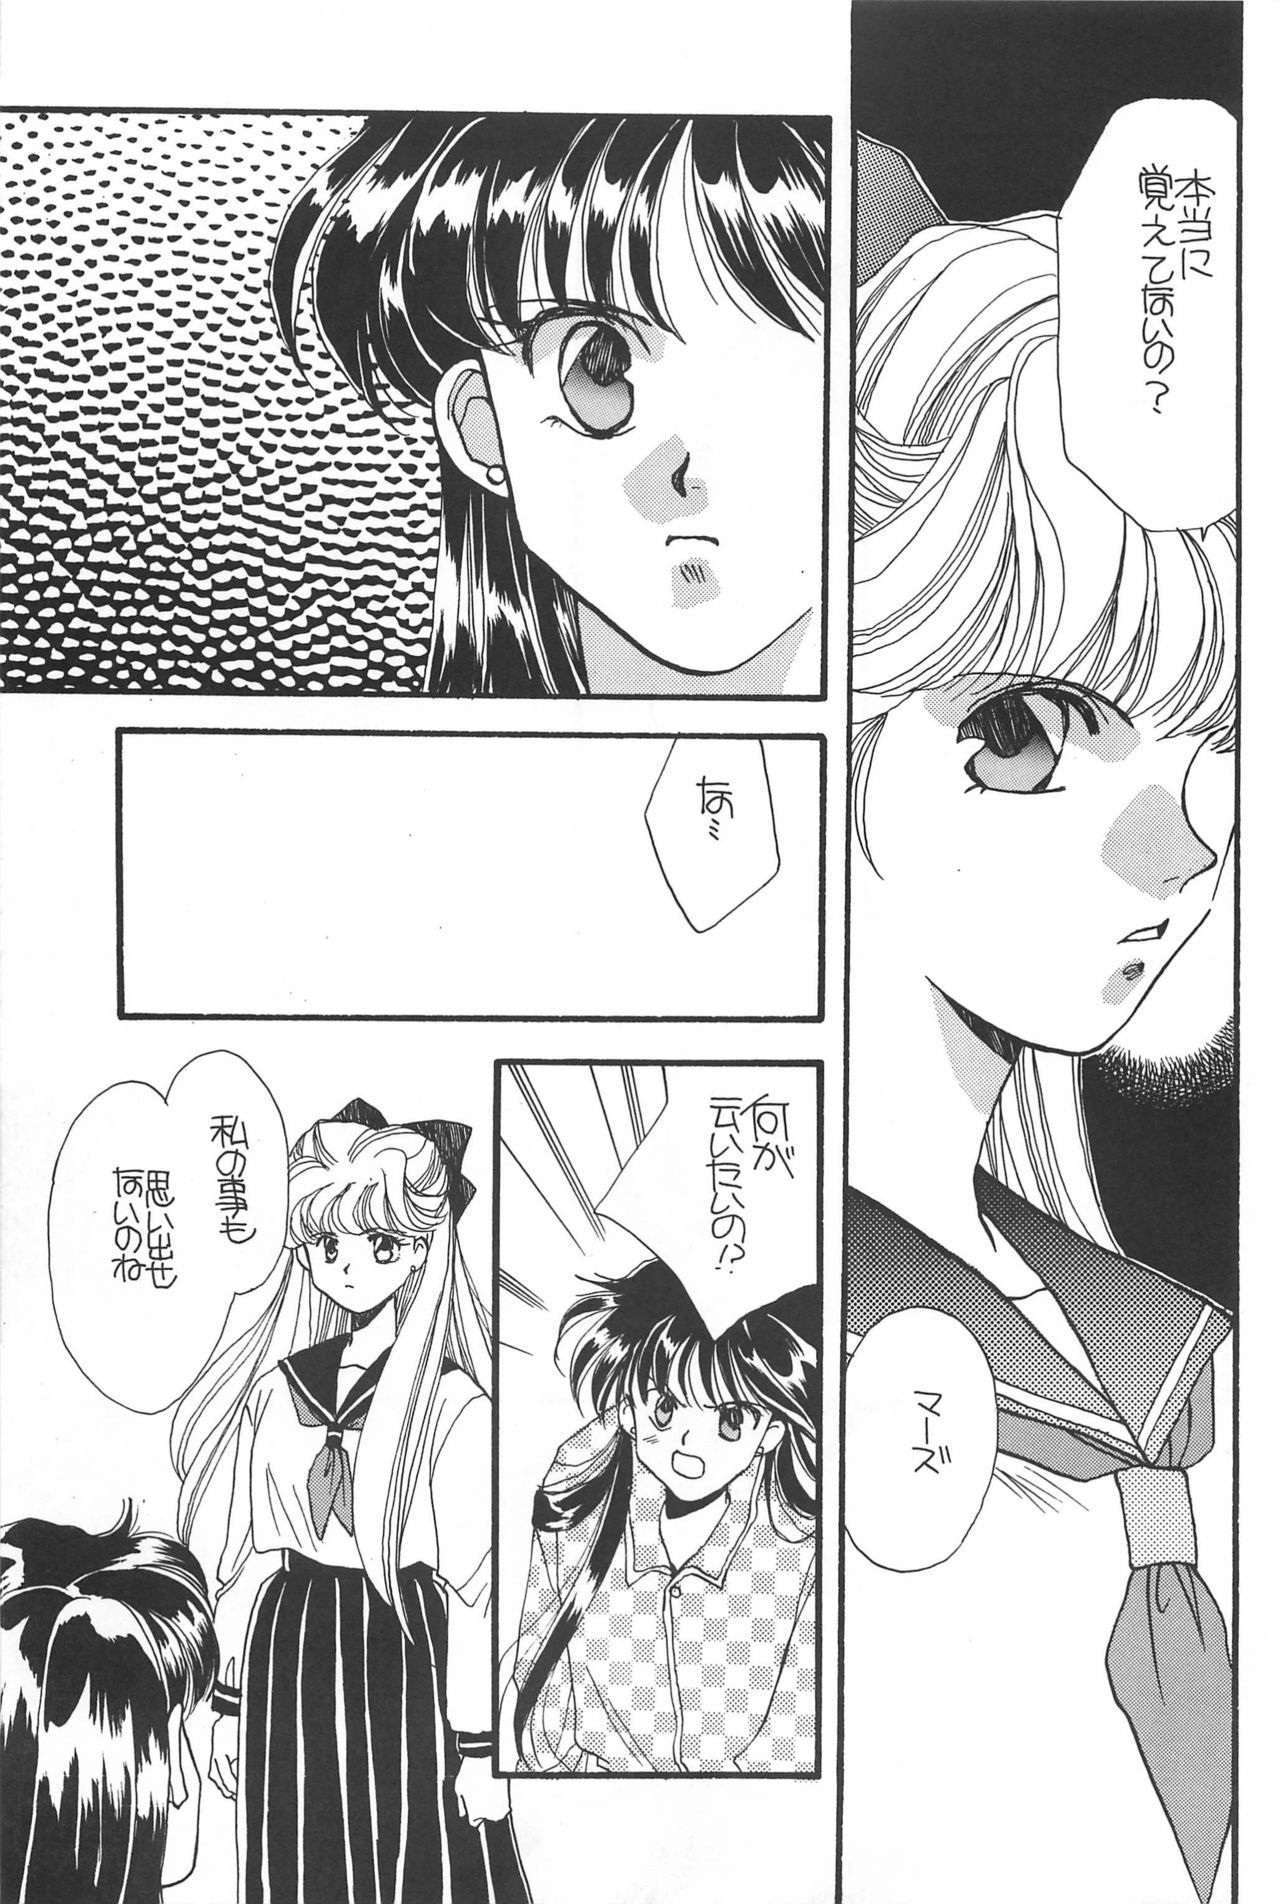 [Hello World (Muttri Moony)] Kaze no You ni Yume no You ni - Sailor Moon Collection (Sailor Moon) 126